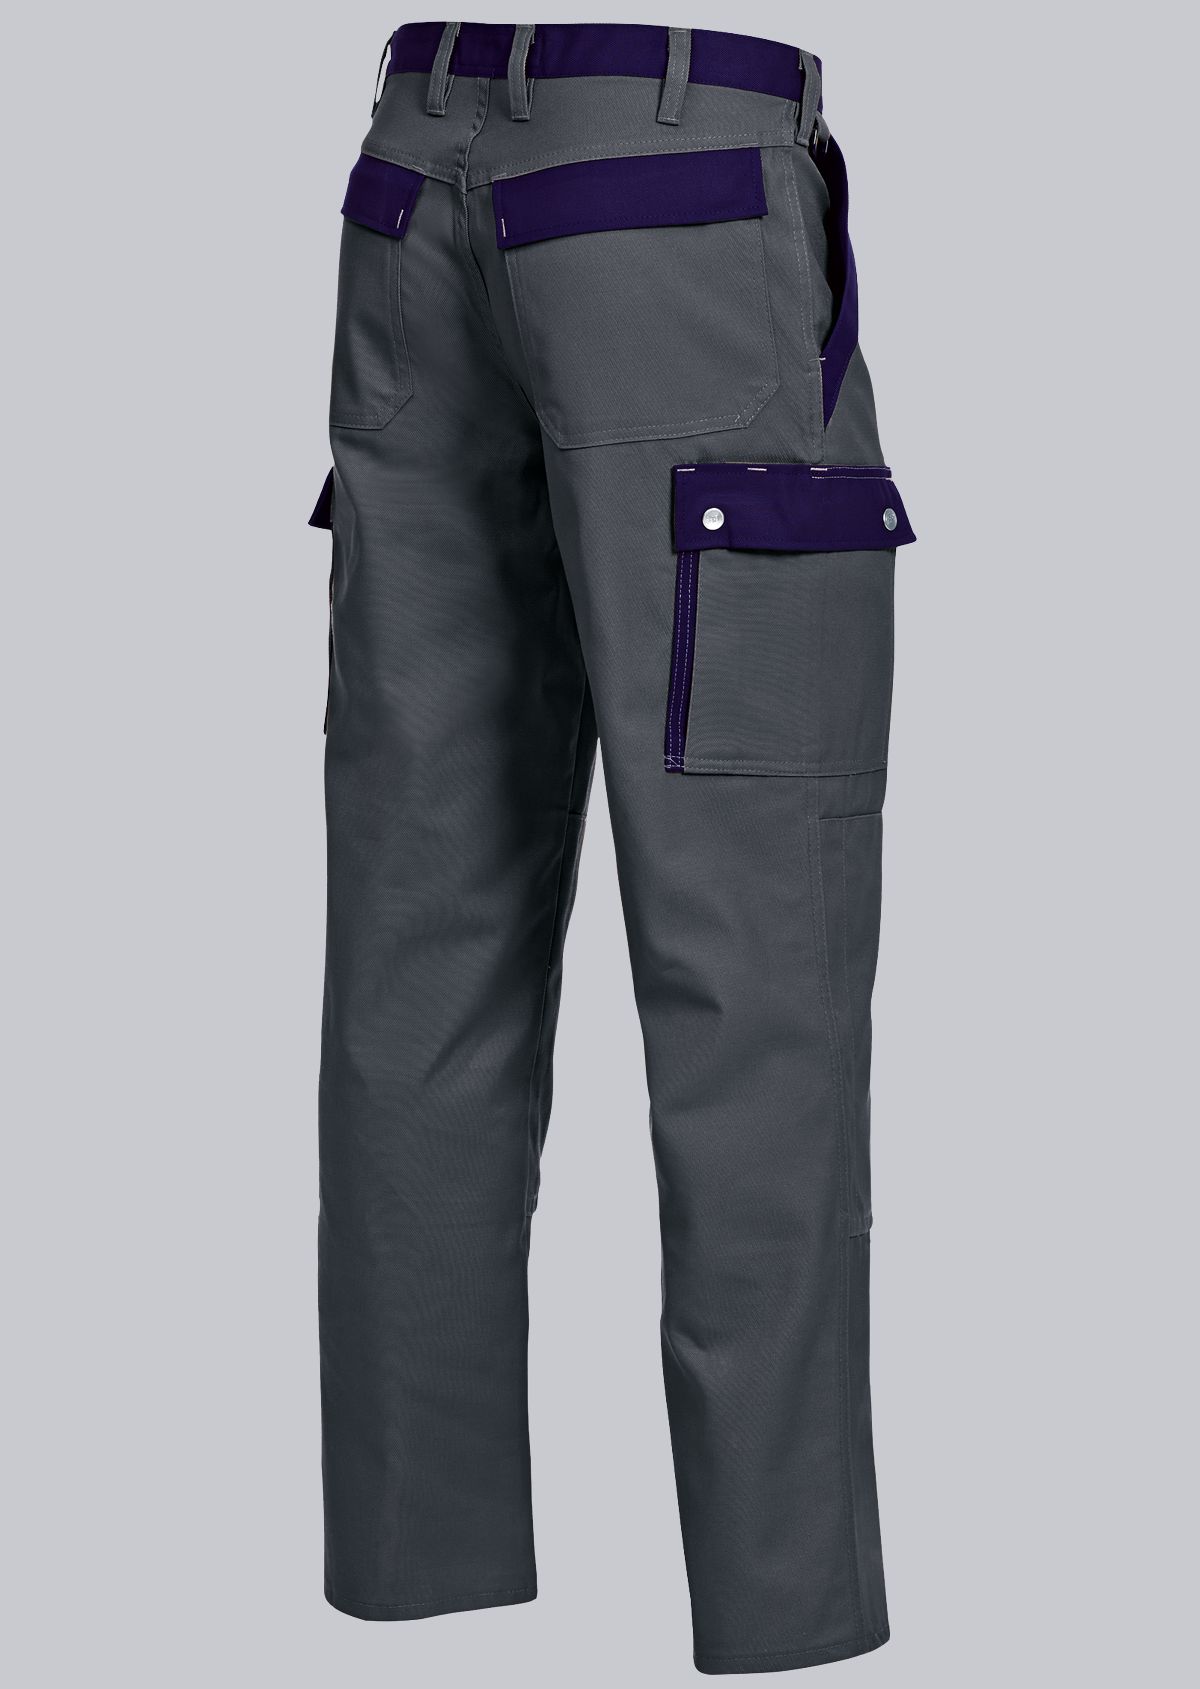 BP® Komfort-Cargohose mit Kniepolstertaschen